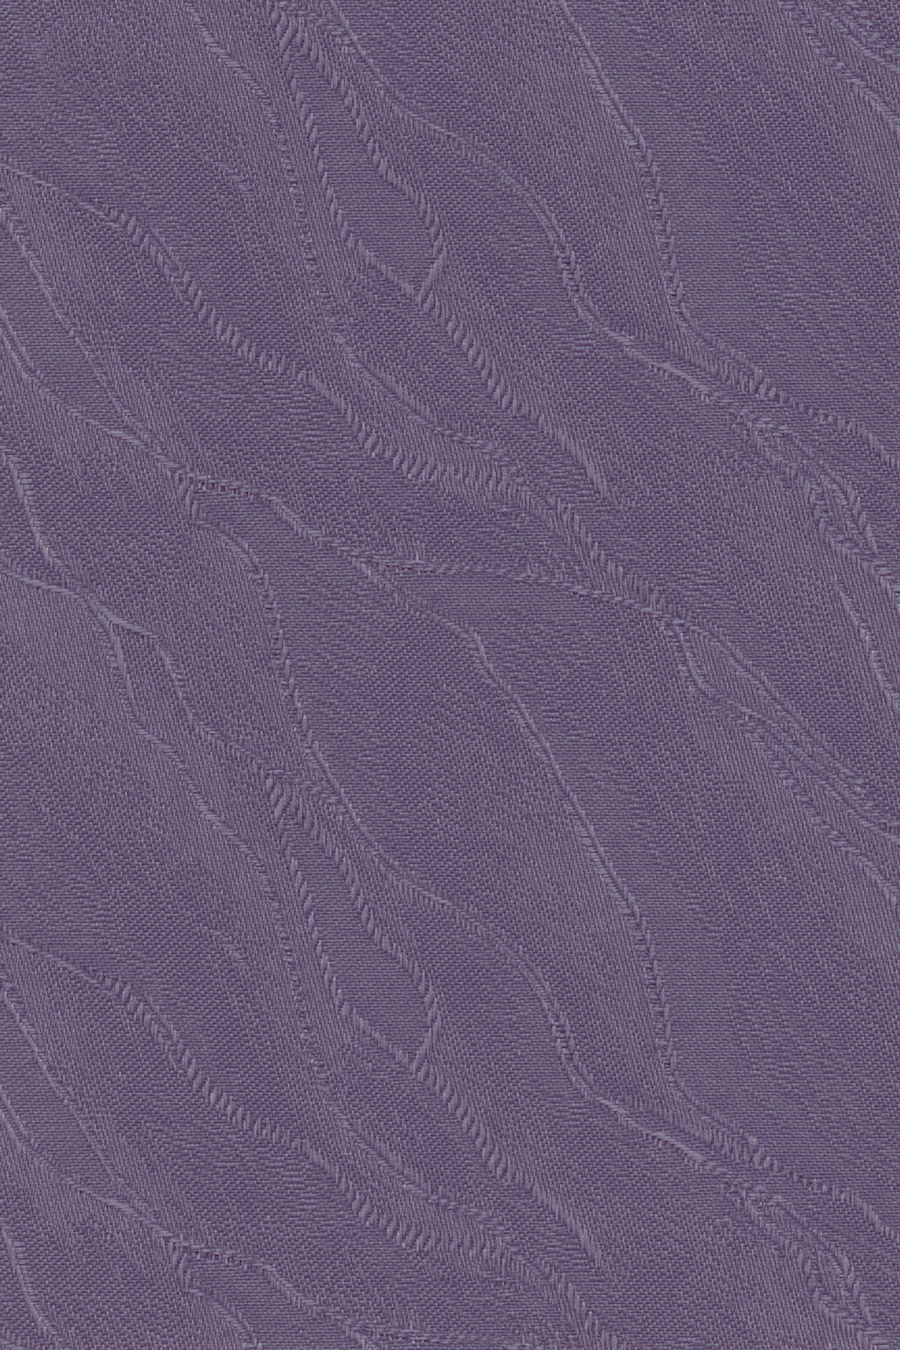 Ткань SUNTIME JAQUARD фиолетовый 87900 для рольштор